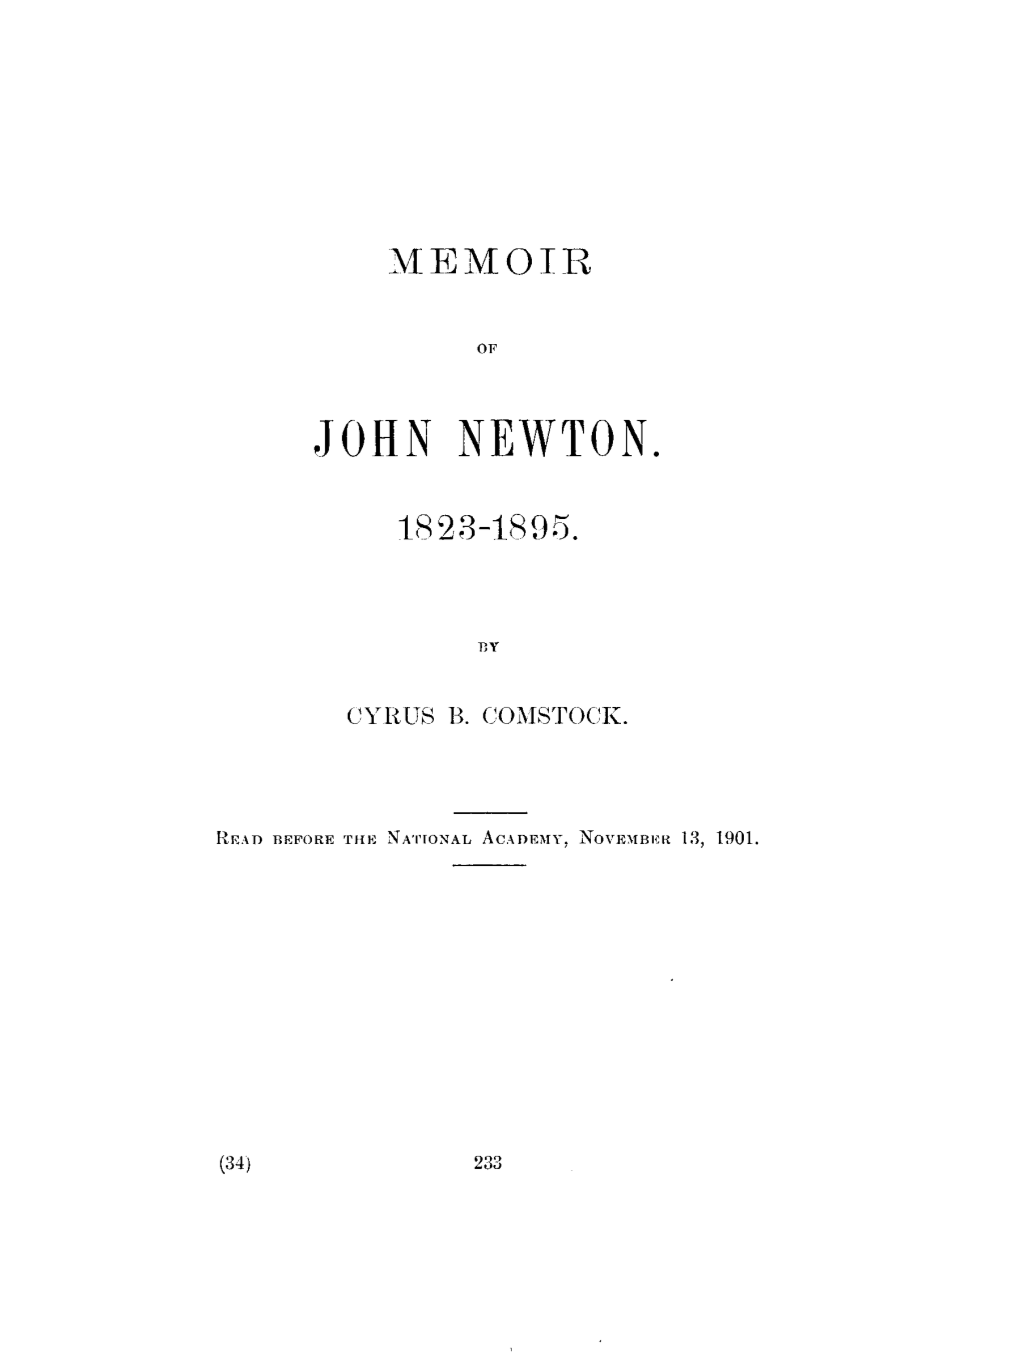 John Newton. 1823-1895